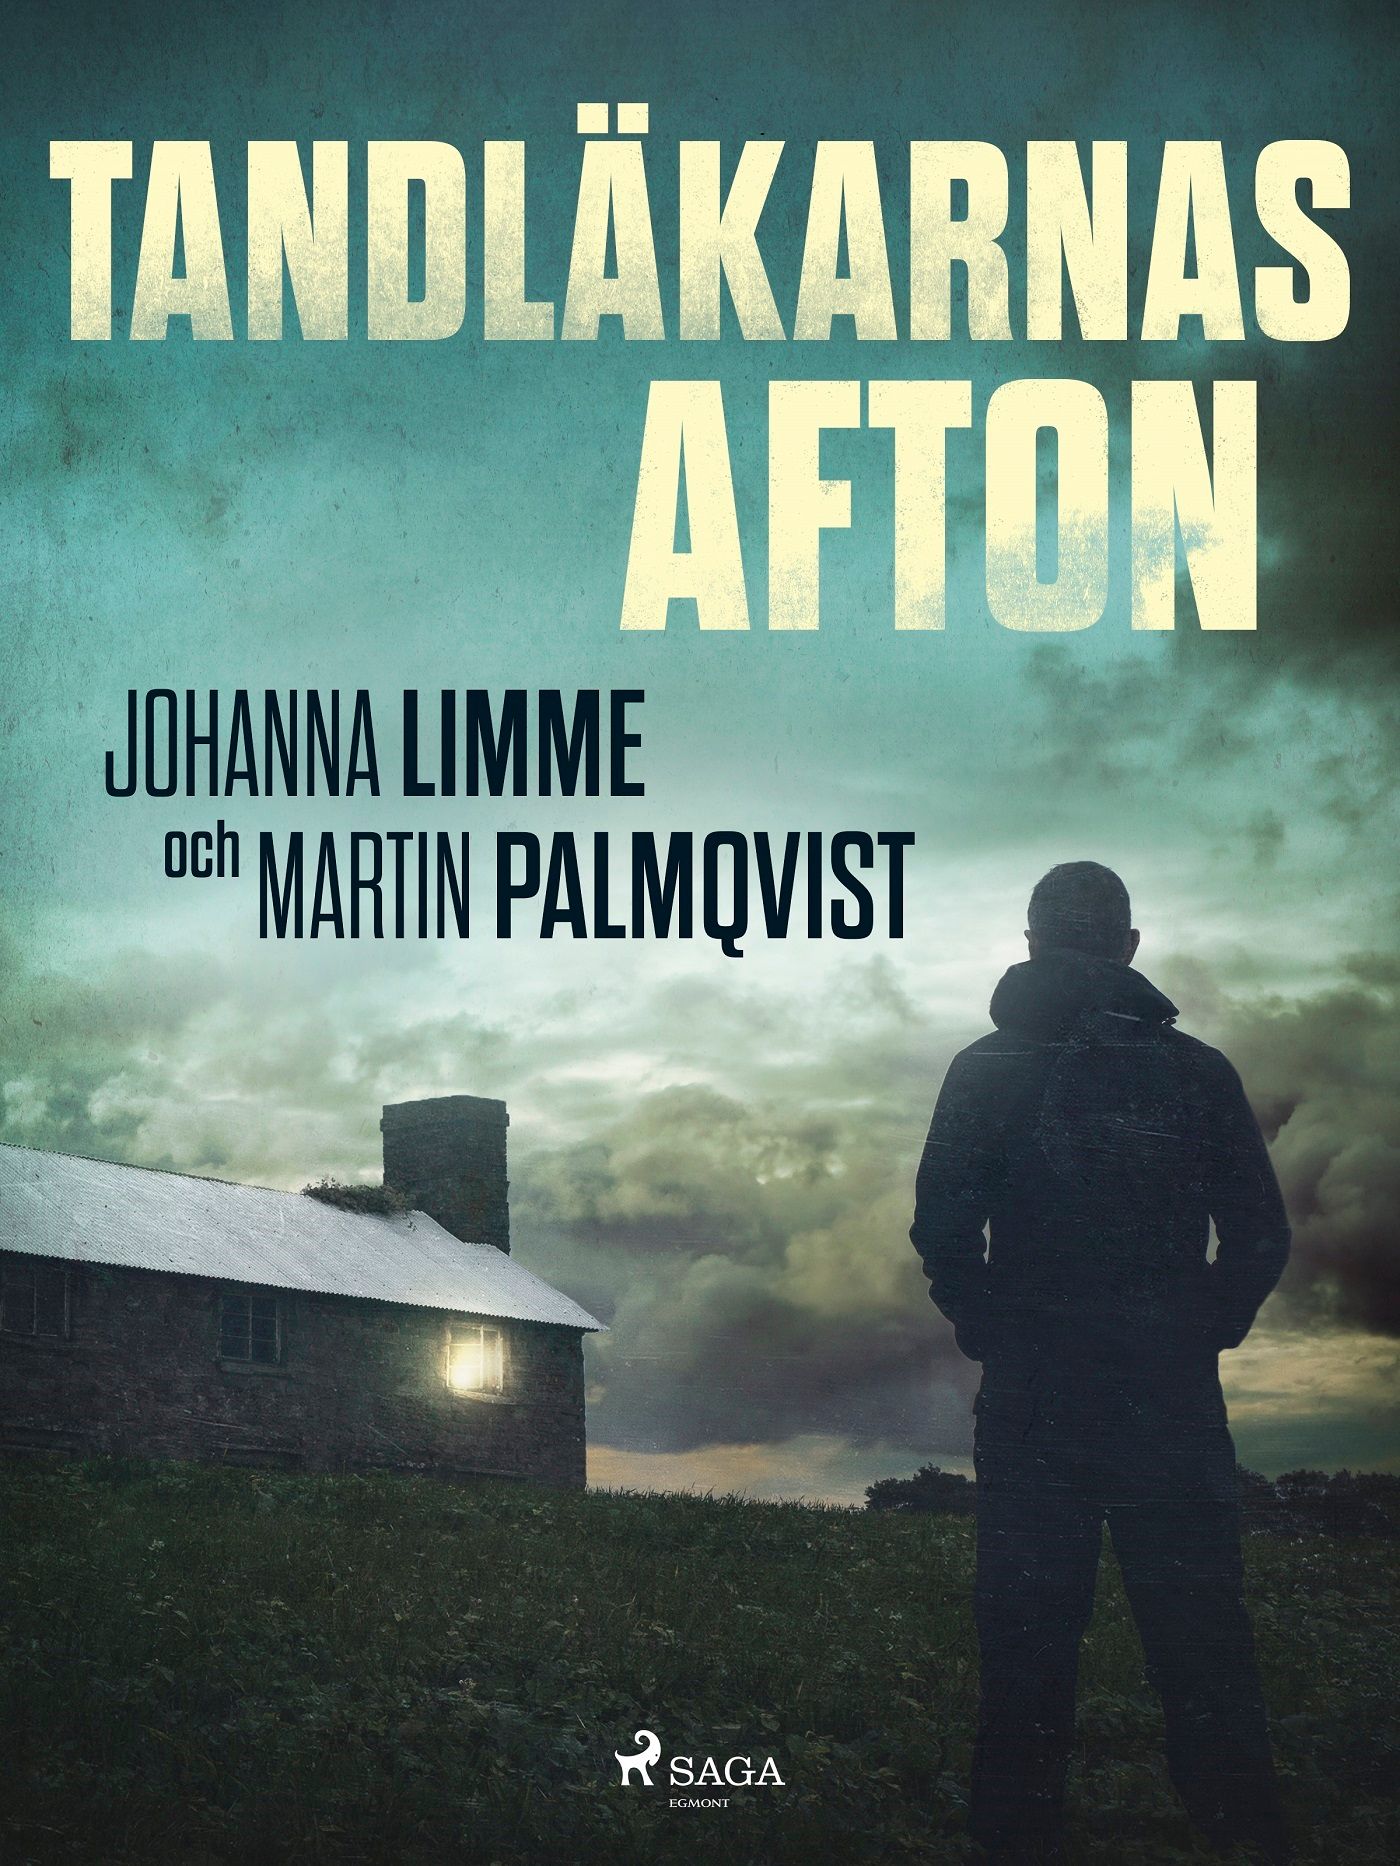 Tandläkarnas afton, e-bok av Johanna Limme, Martin Palmqvist